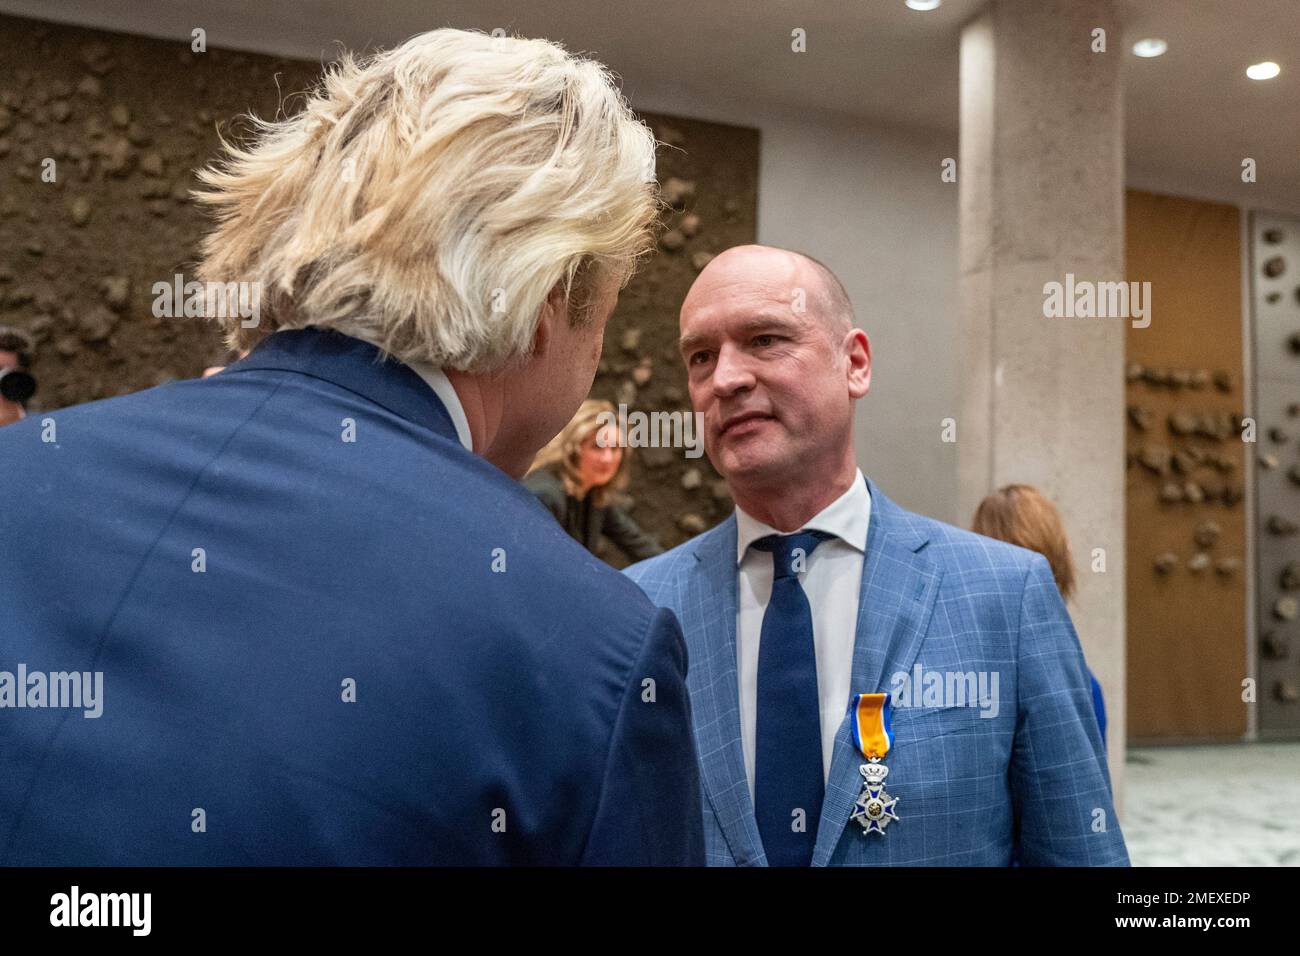 DEN HAAG, NIEDERLANDE - JANUAR 22: Geert Wilders von PVV und Gert-Jan Segers zum Abschied im niederländischen Repräsentantenhaus. (Foto: Jeroen MeuwsenOrange Pictures) Stockfoto